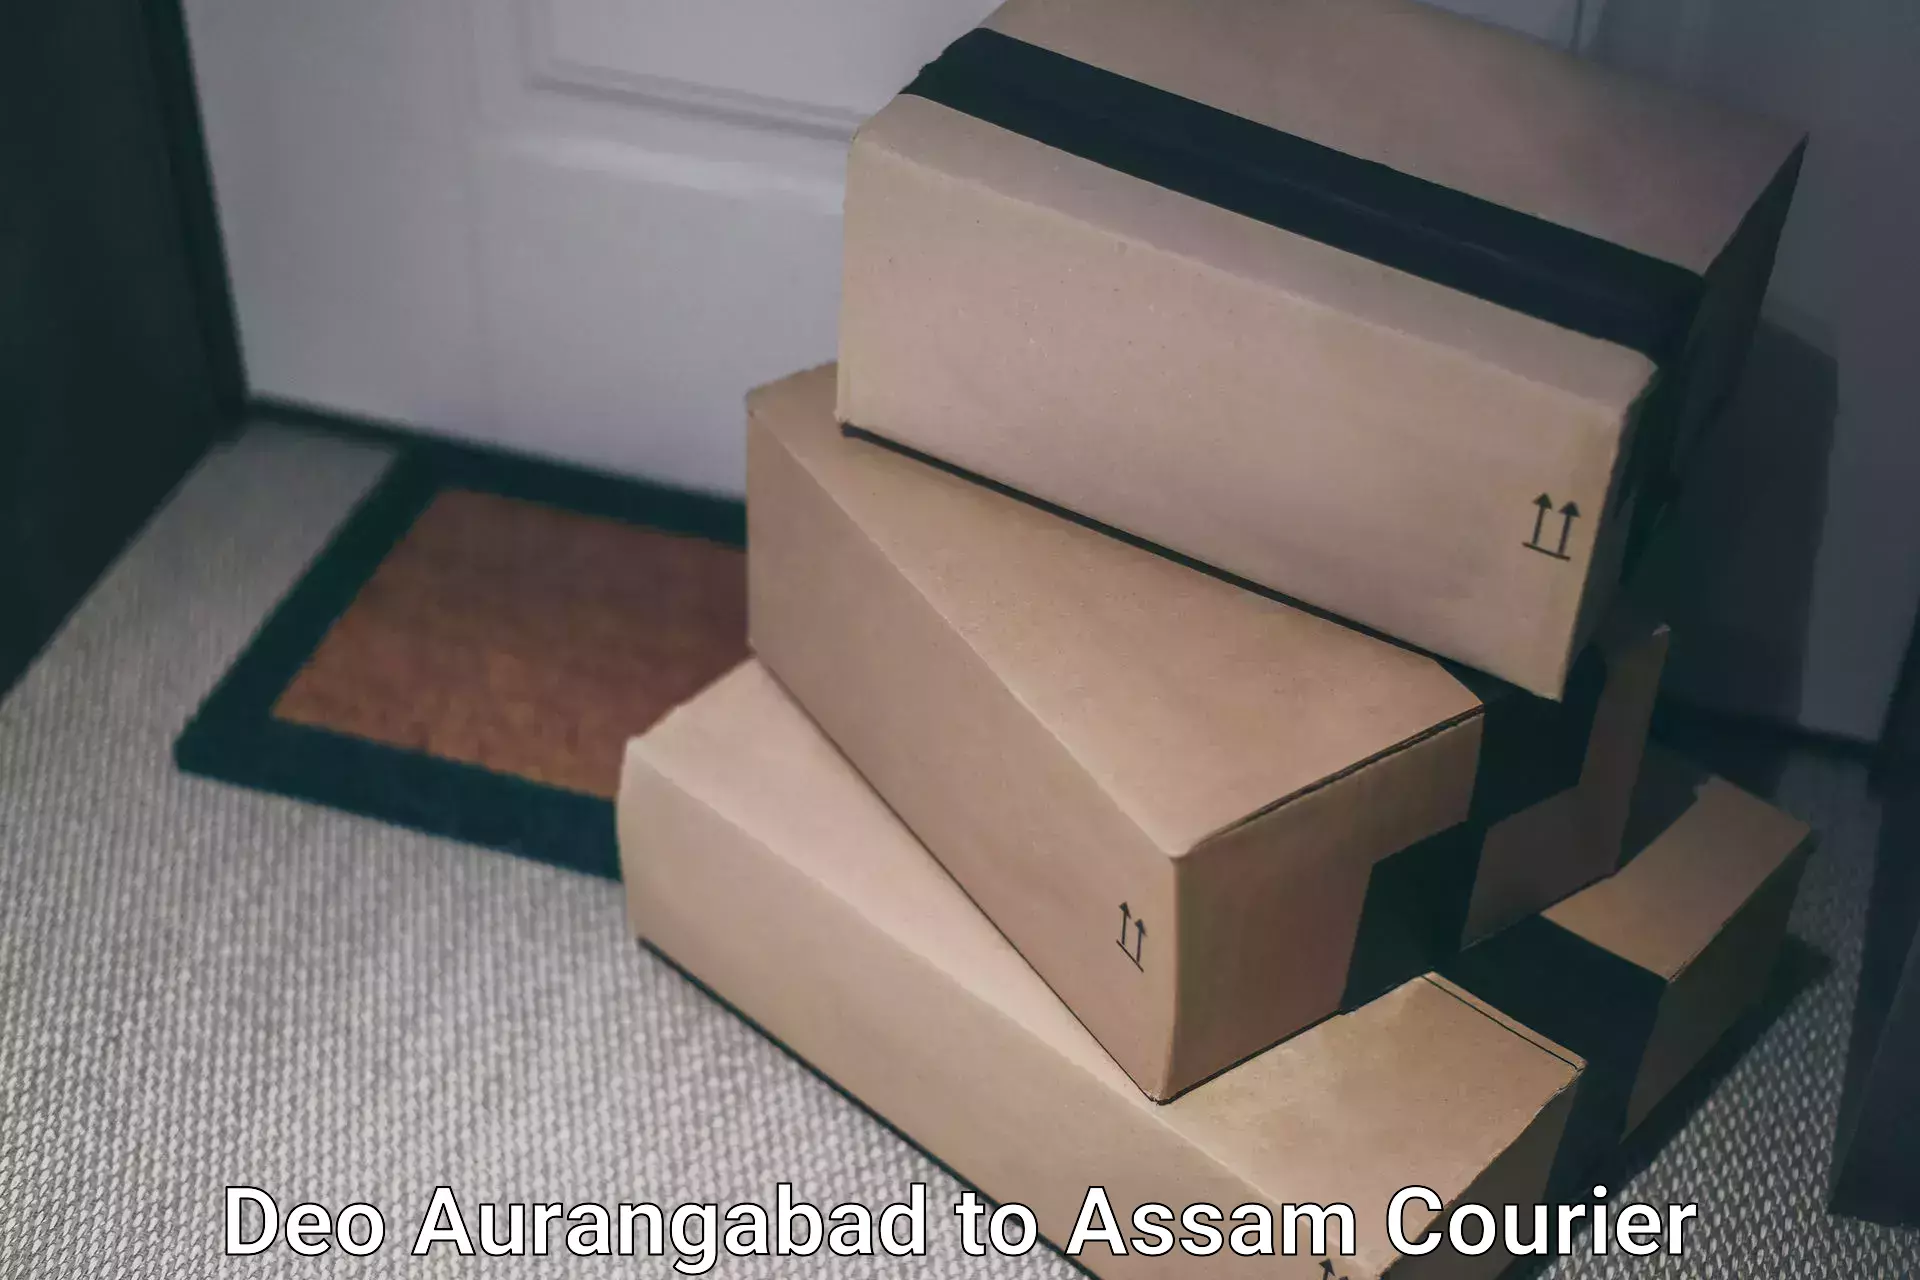 24-hour delivery options Deo Aurangabad to Sivasagar